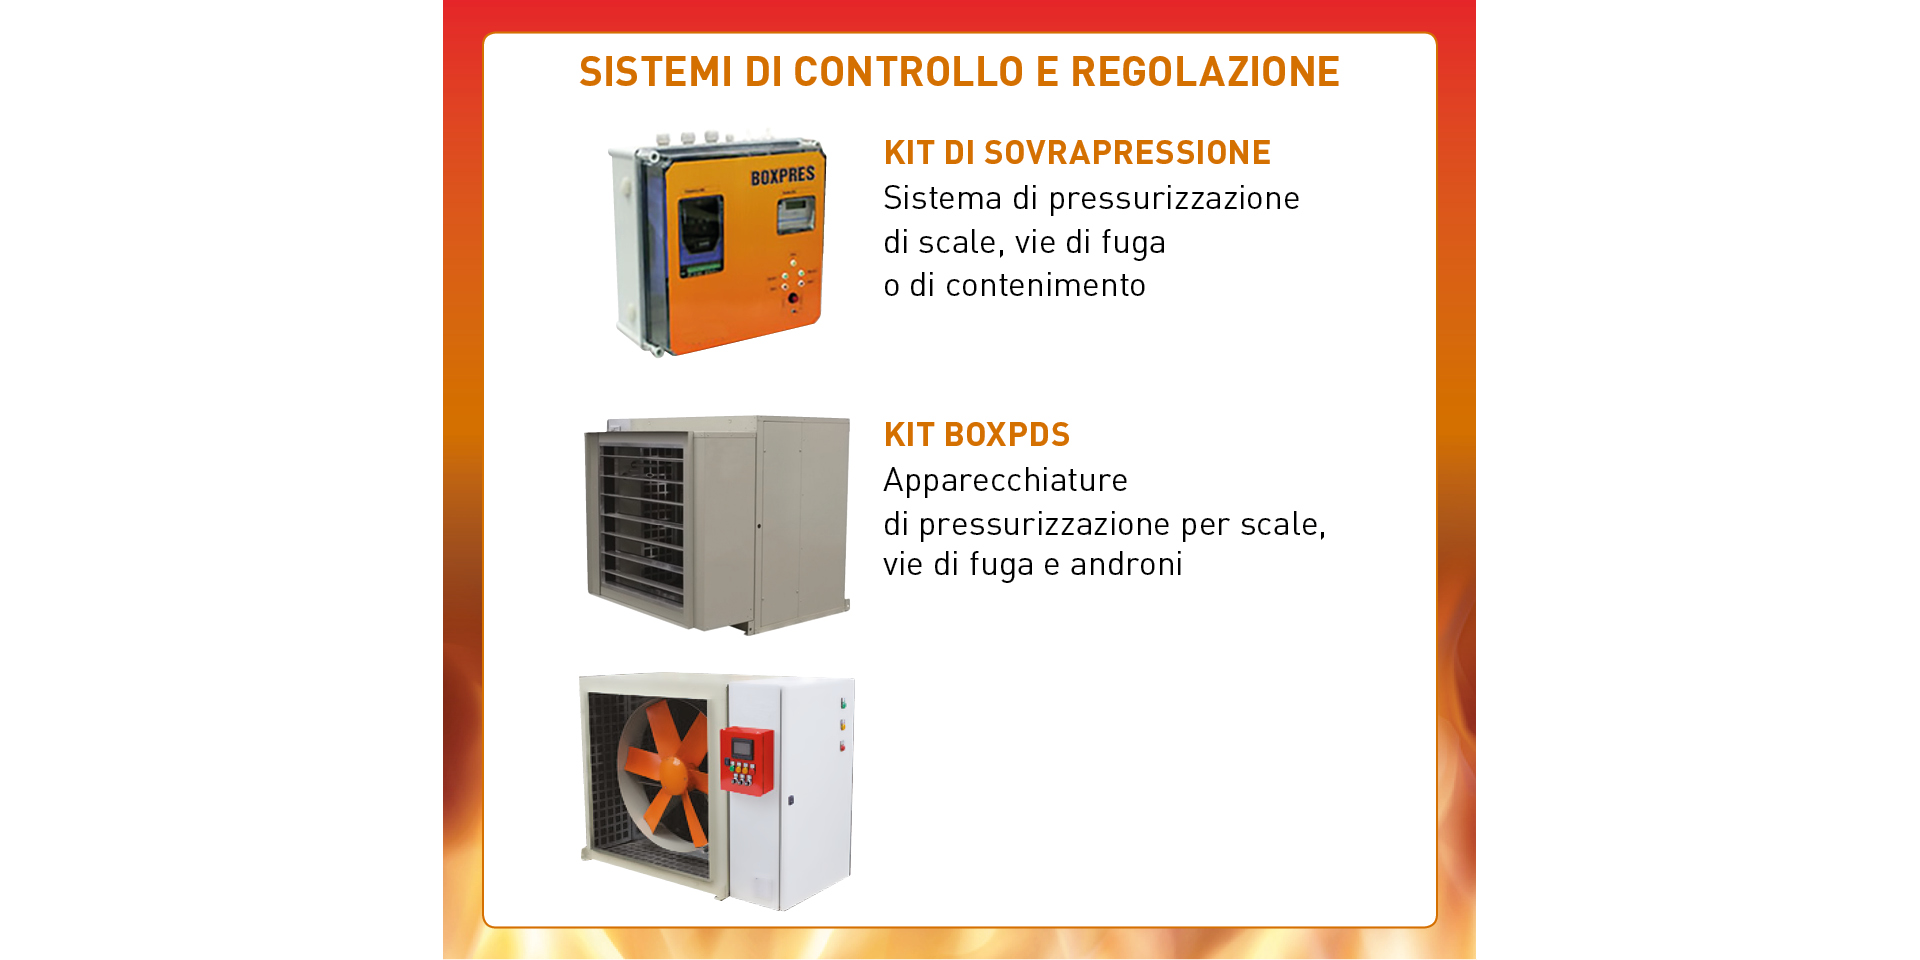 Soluzioni integrali per il controllo del fumo e del calore. UNI EN 12101-6: 2005 (EC 2007) Sistemi a differenza di pressione